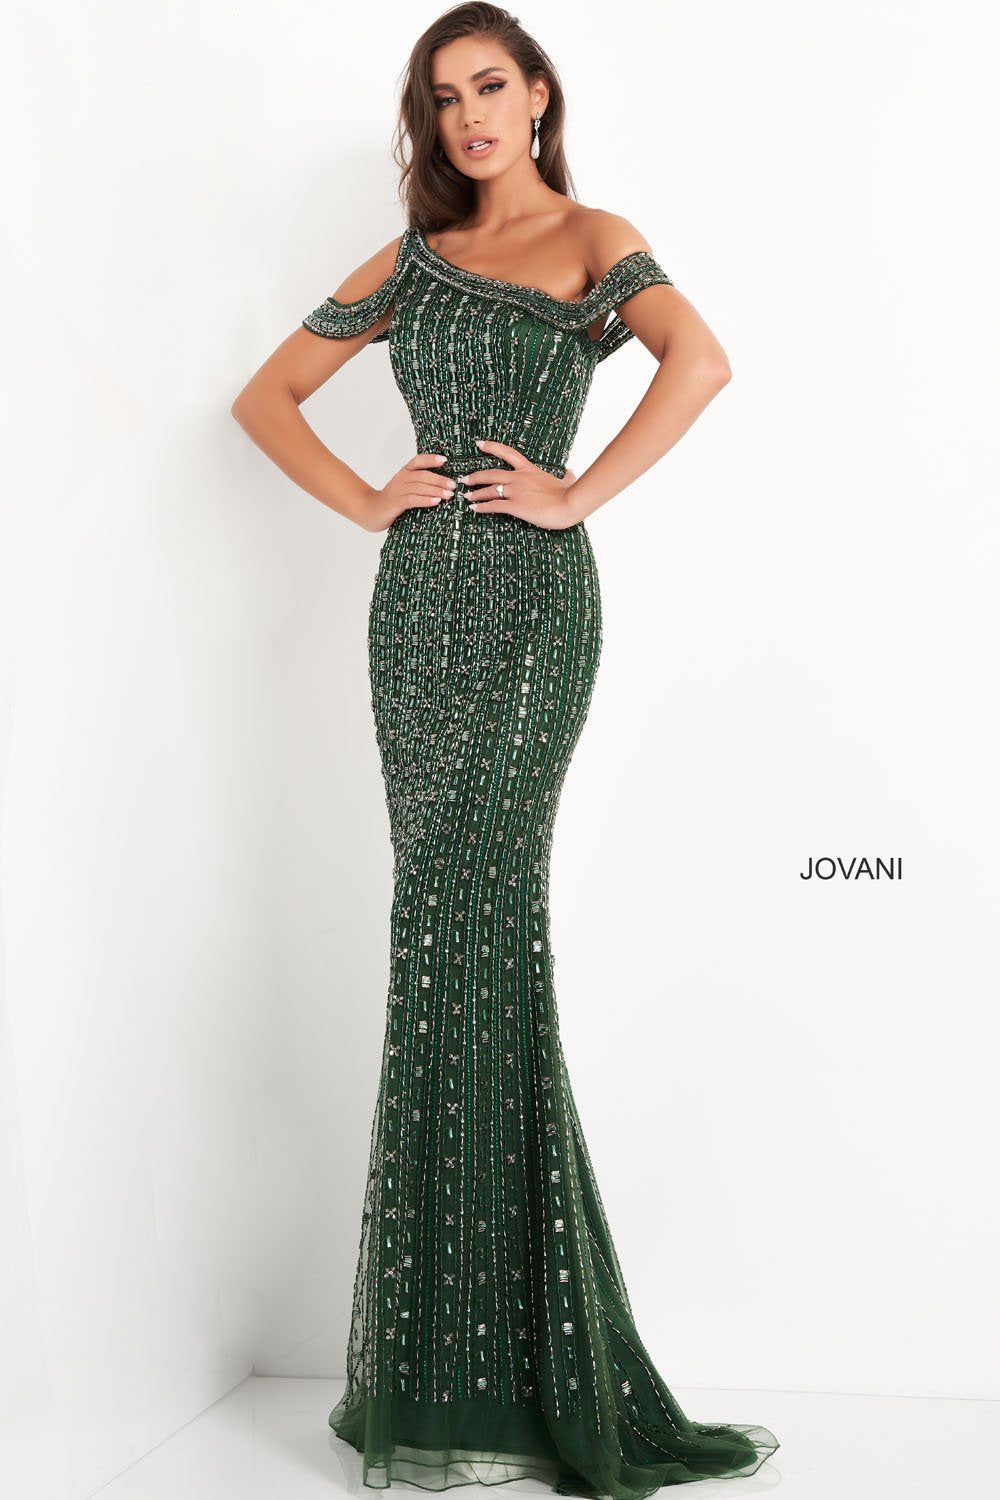 Jovani 03124 Dresses